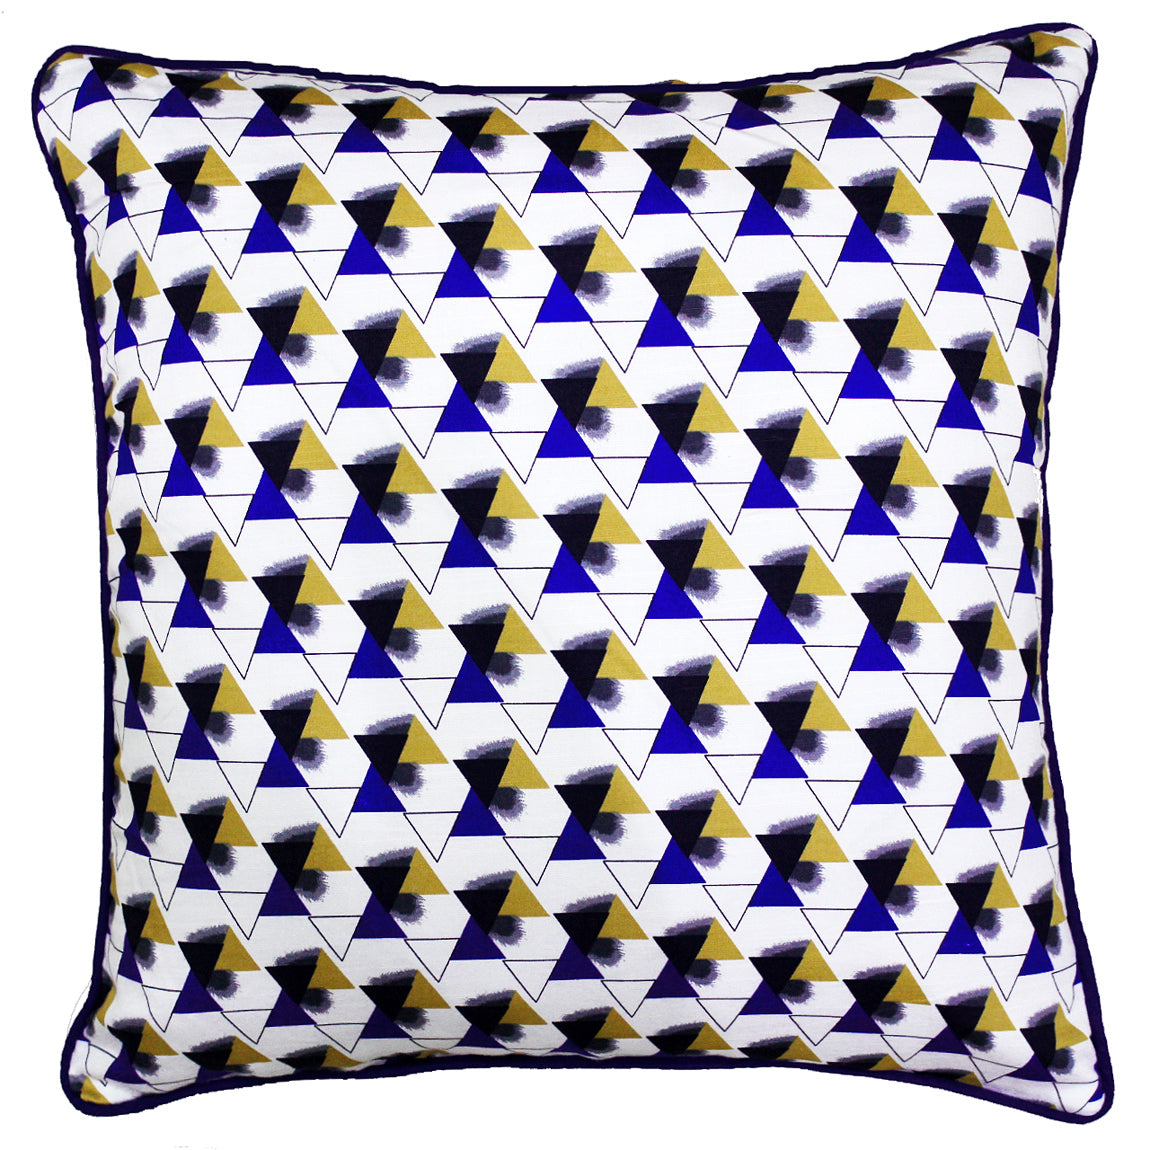 Quartz Printed Geometrical Cotton Cushion Cover - Blue